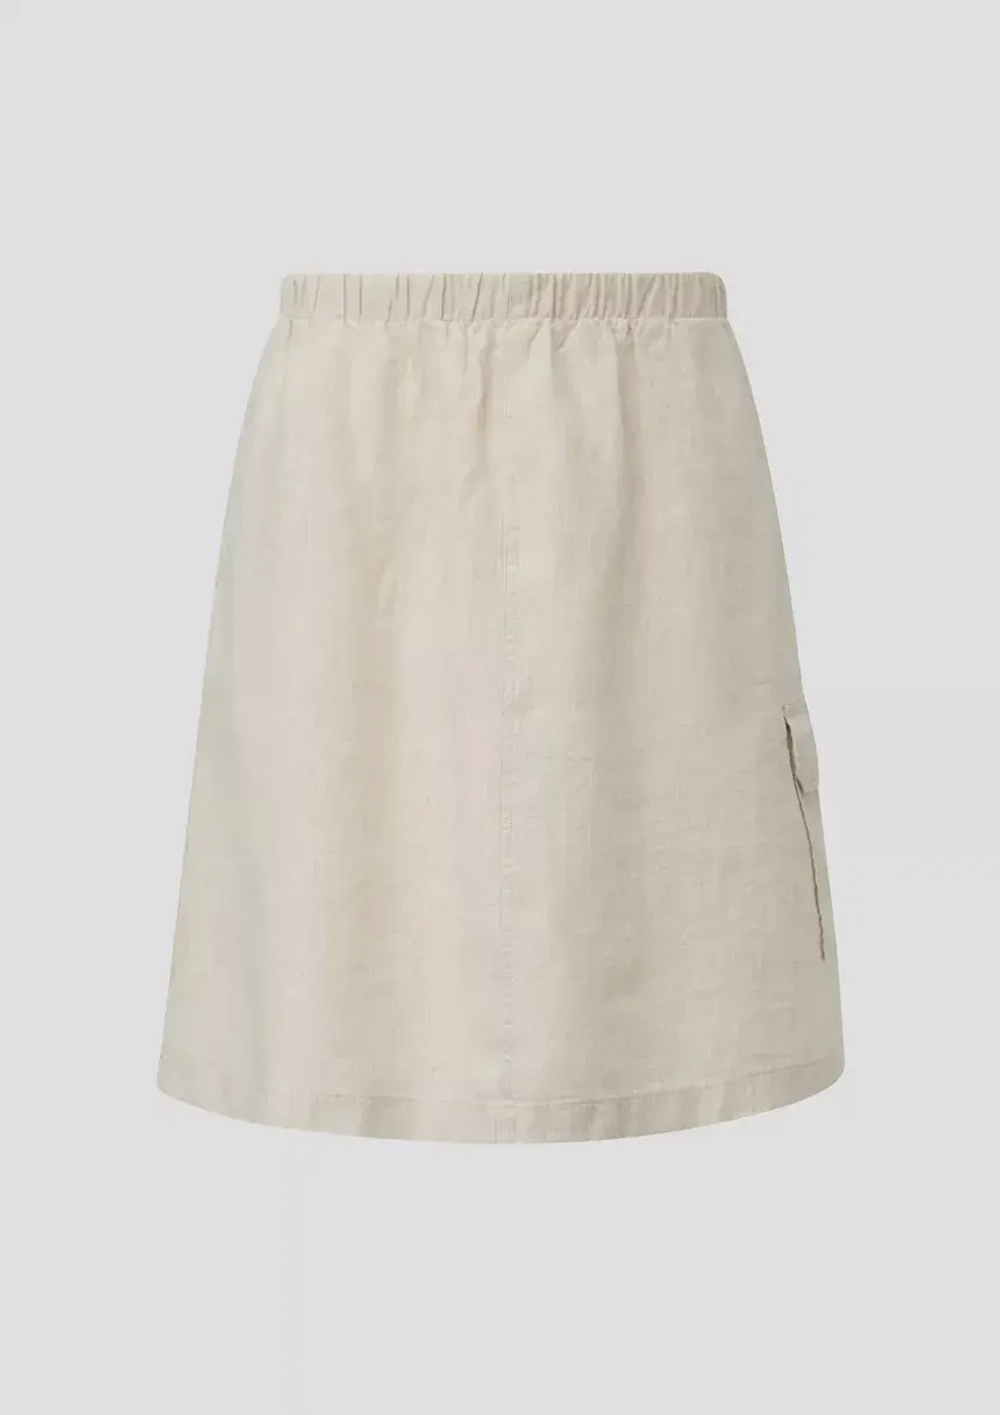 Льняная юбка-миди с накладными карманами от s.Oliver